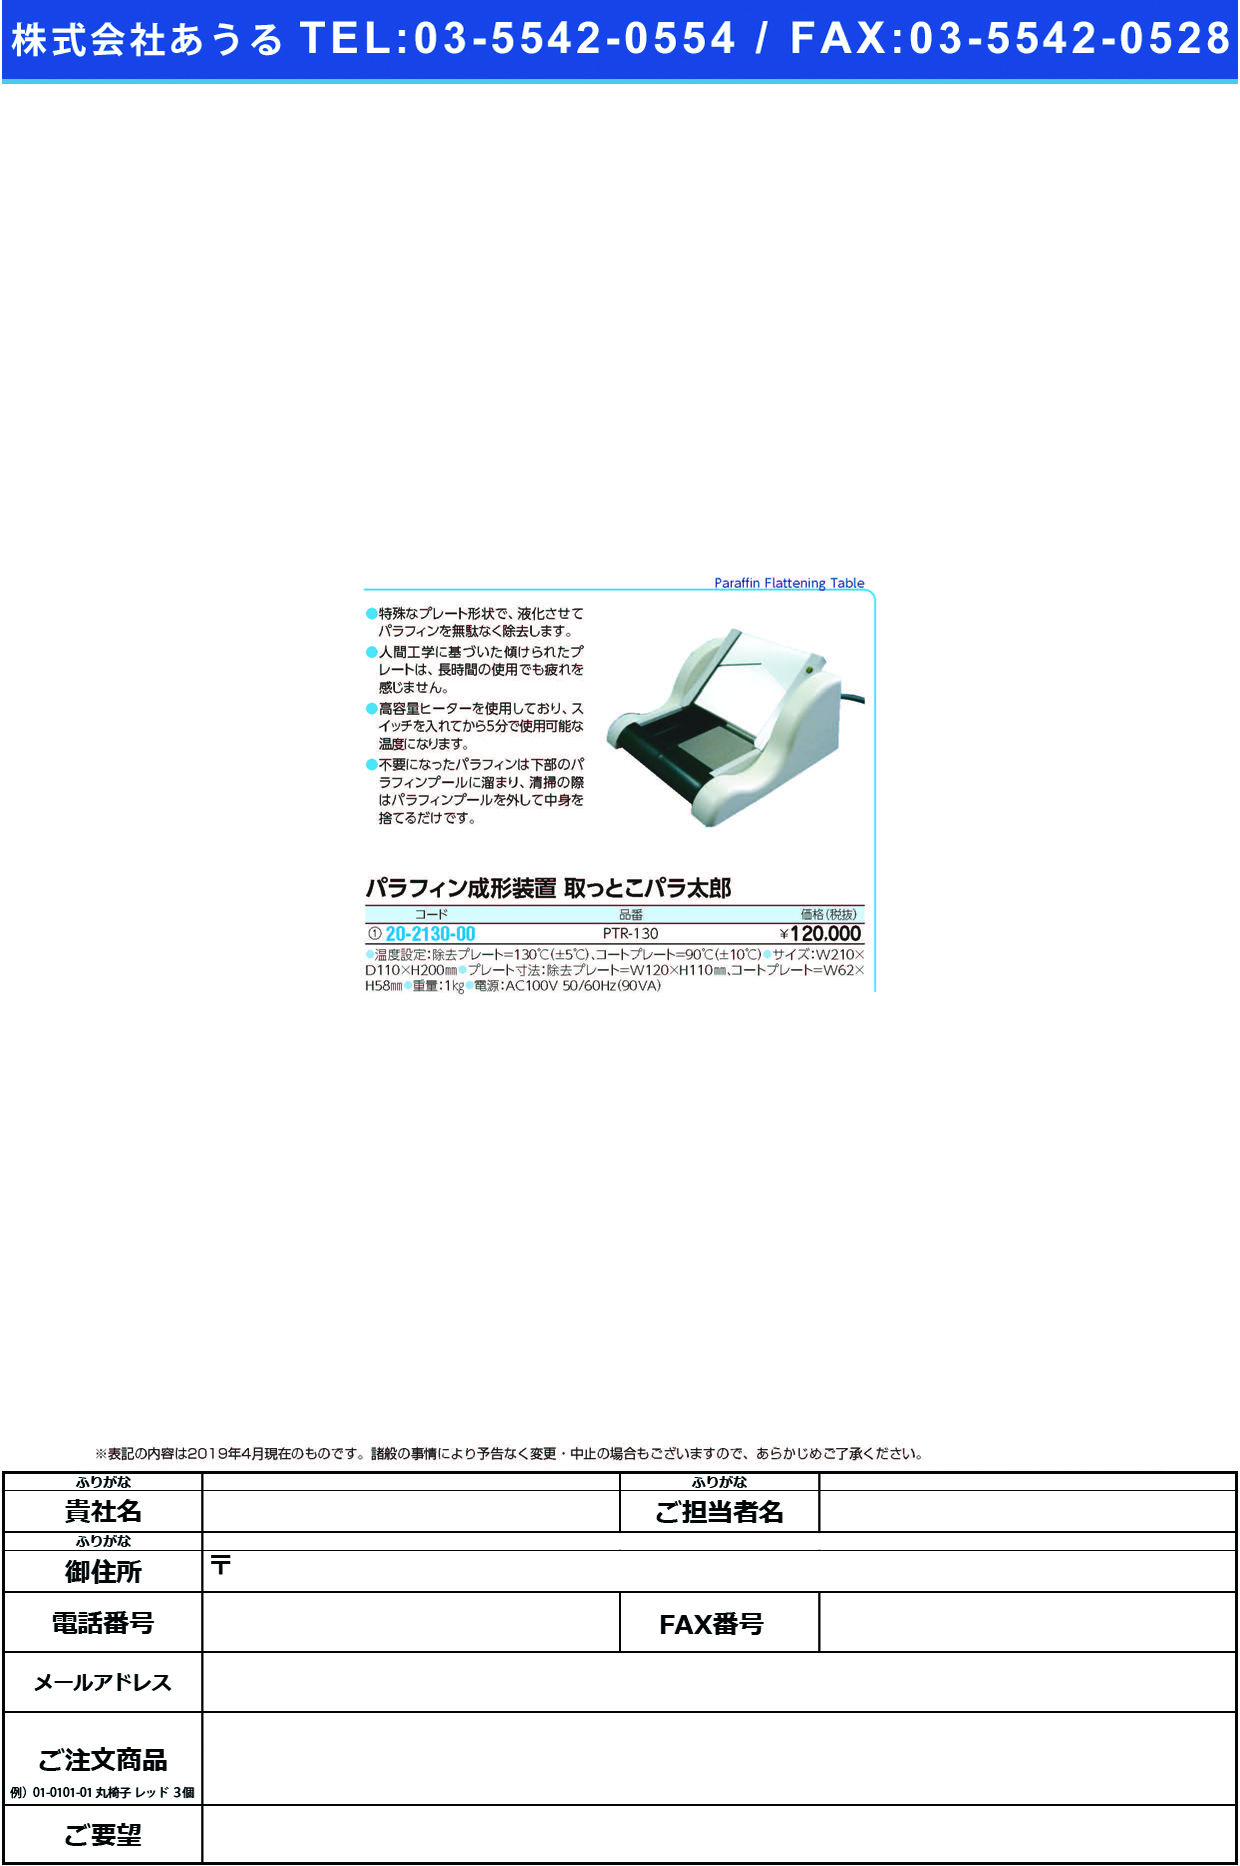 (20-2130-00)パラフィン成型装置パラ太郎 PTR-130 ﾊﾟﾗﾌｨﾝｾｲｹｲｿｳﾁﾊﾟﾗﾀﾛｳ【1台単位】【2019年カタログ商品】